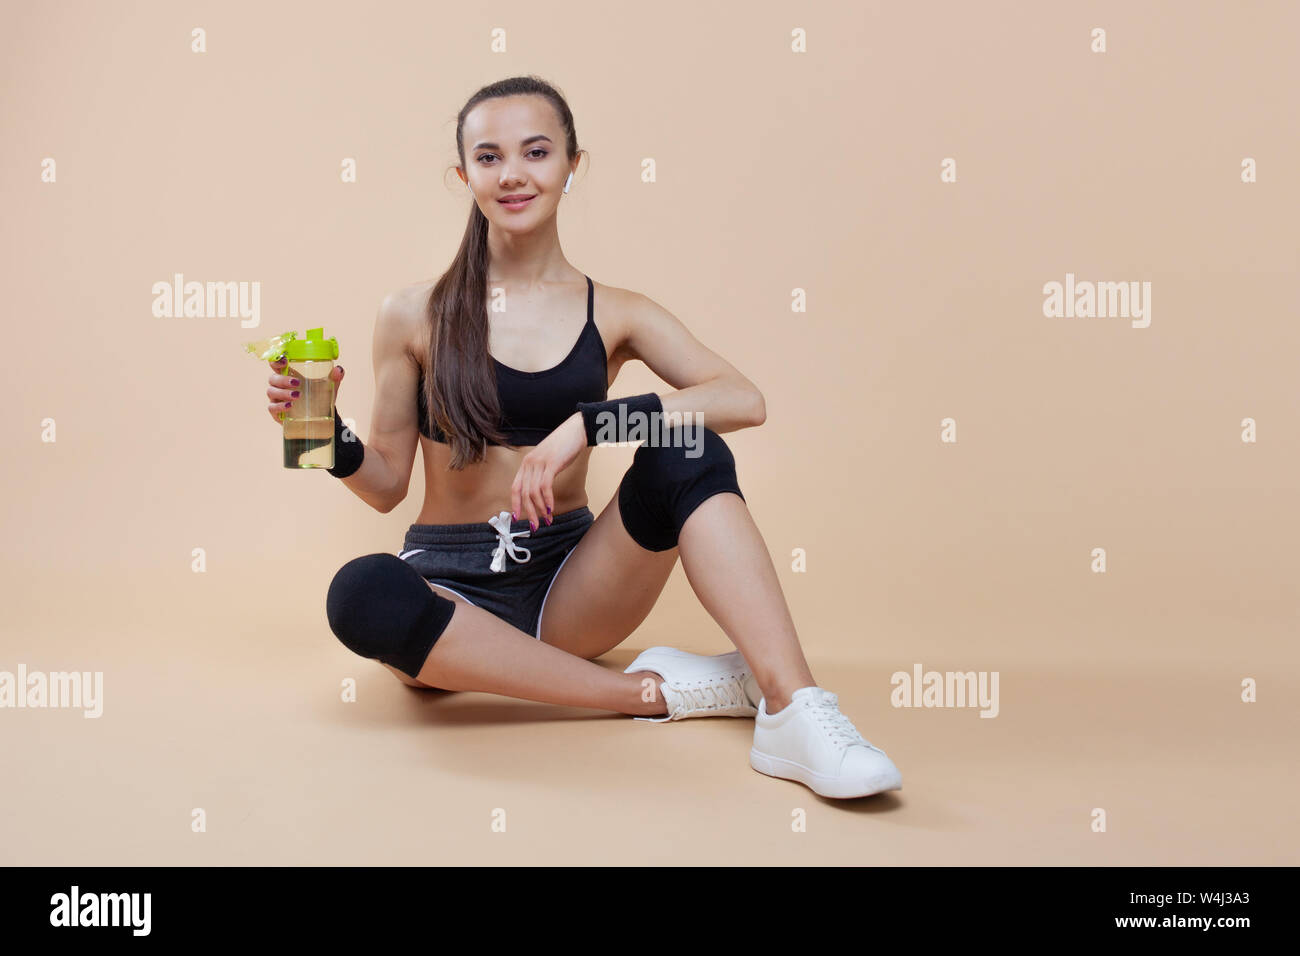 Ein niedliches athletische brunette Mädchen, in einer enganliegenden Sport einheitliche, sitzt, liegt nach dem Training, in schwarz Kniescheiben, mit einer Flasche für Sporternährung. Stockfoto